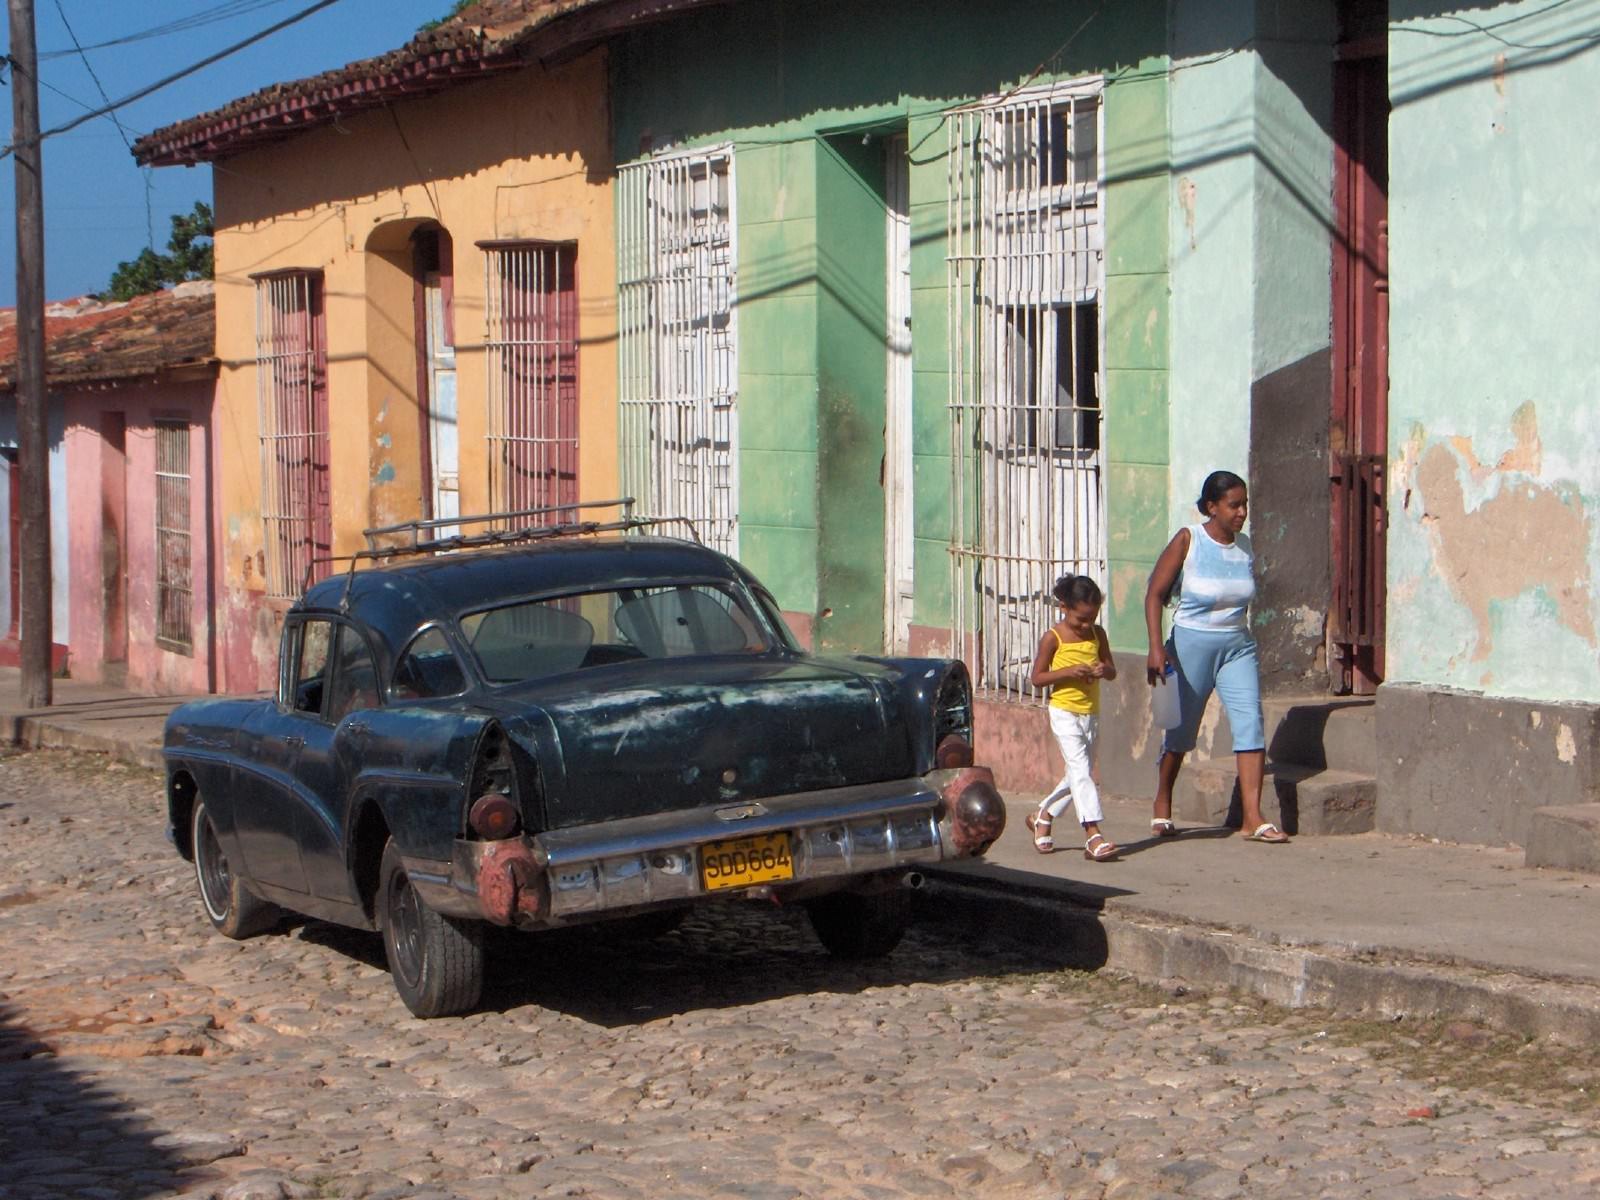 Cuba Trinidad, en ville